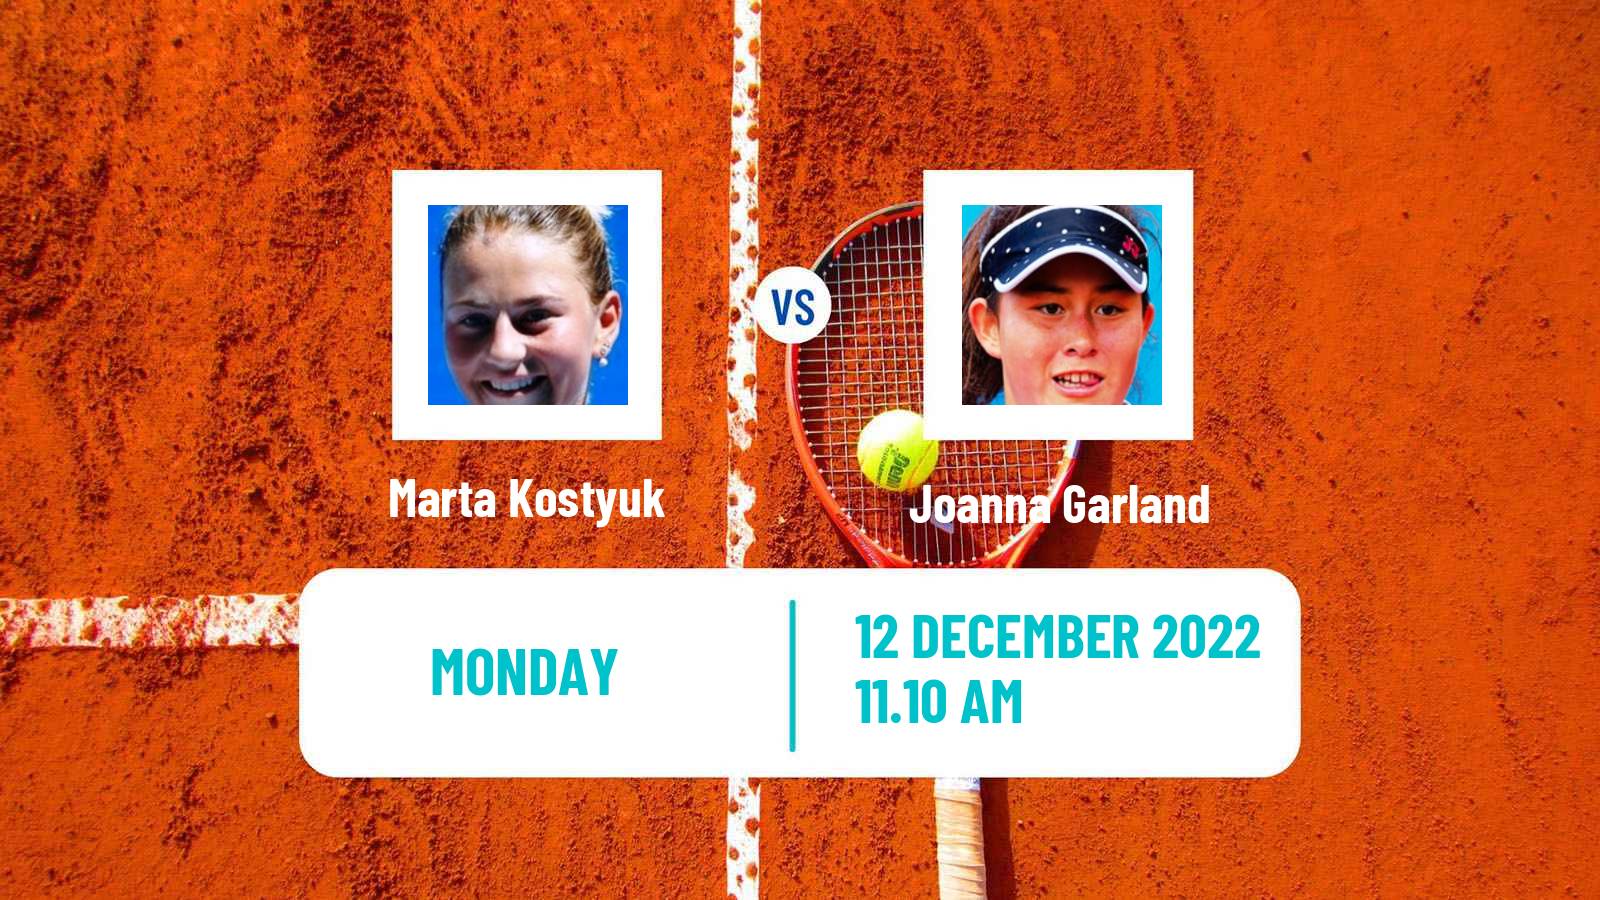 Tennis ATP Challenger Marta Kostyuk - Joanna Garland